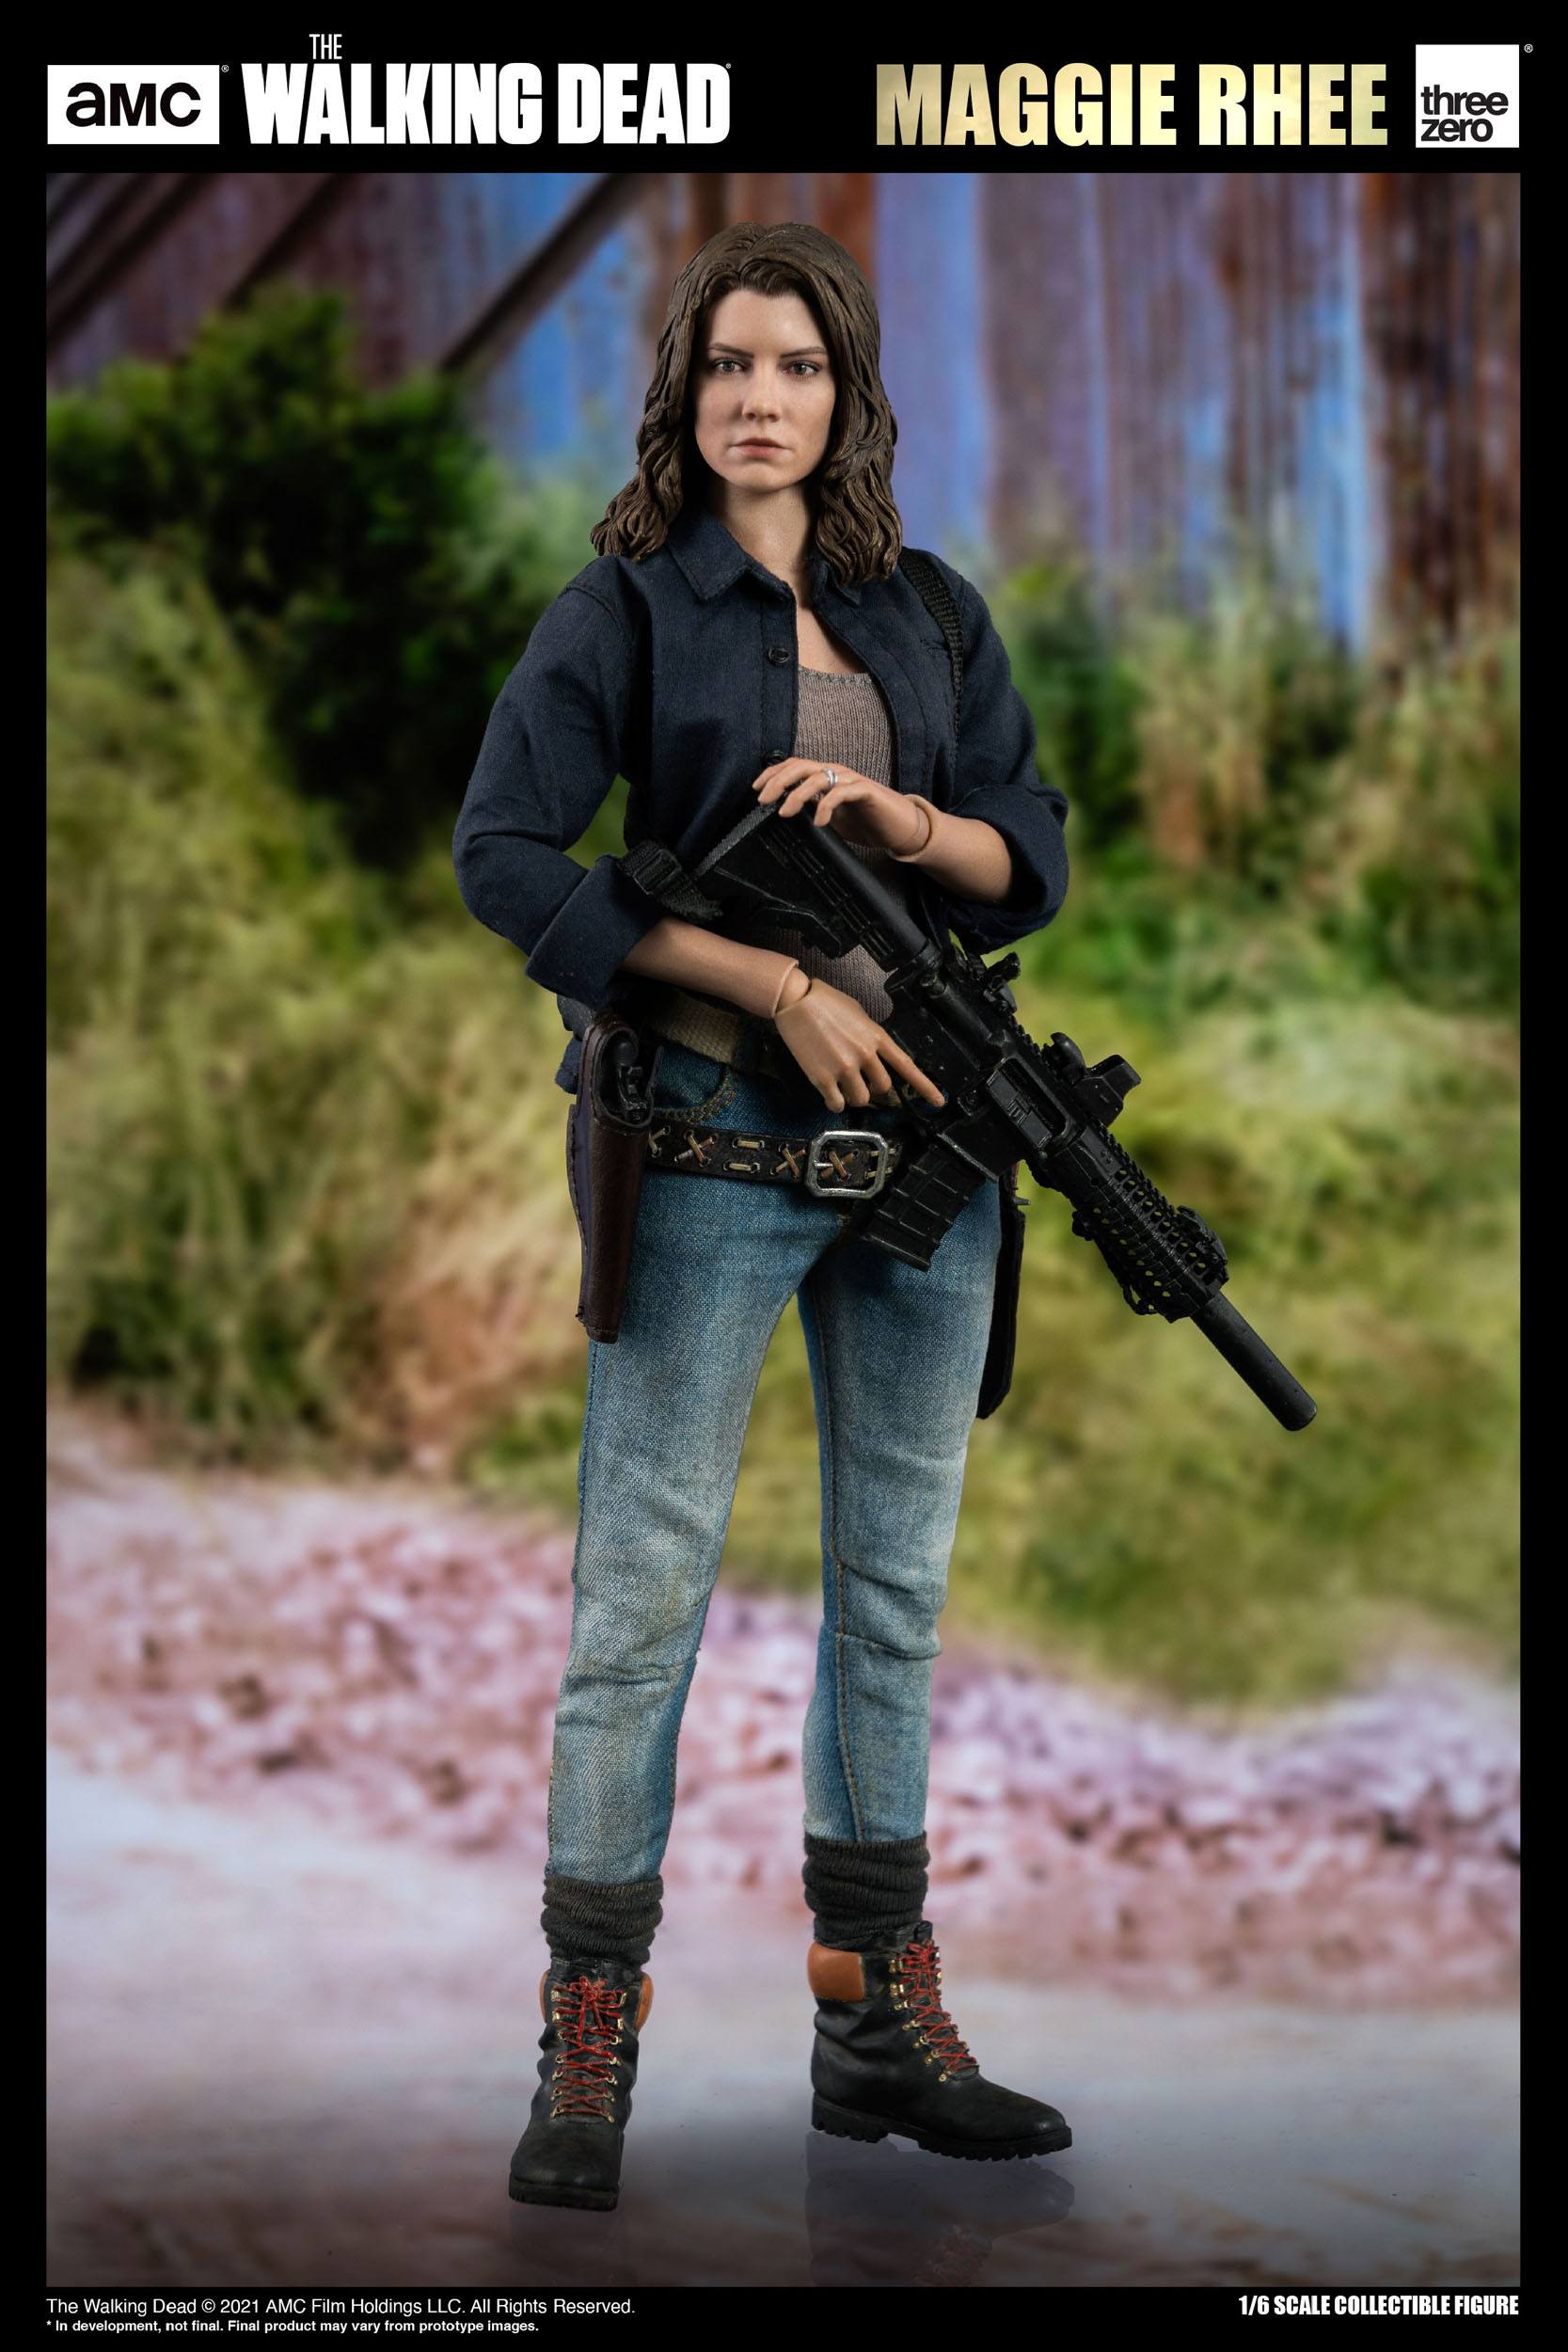 The Walking Dead Action Figure Maggie Rhee - 28 CM - 1:6